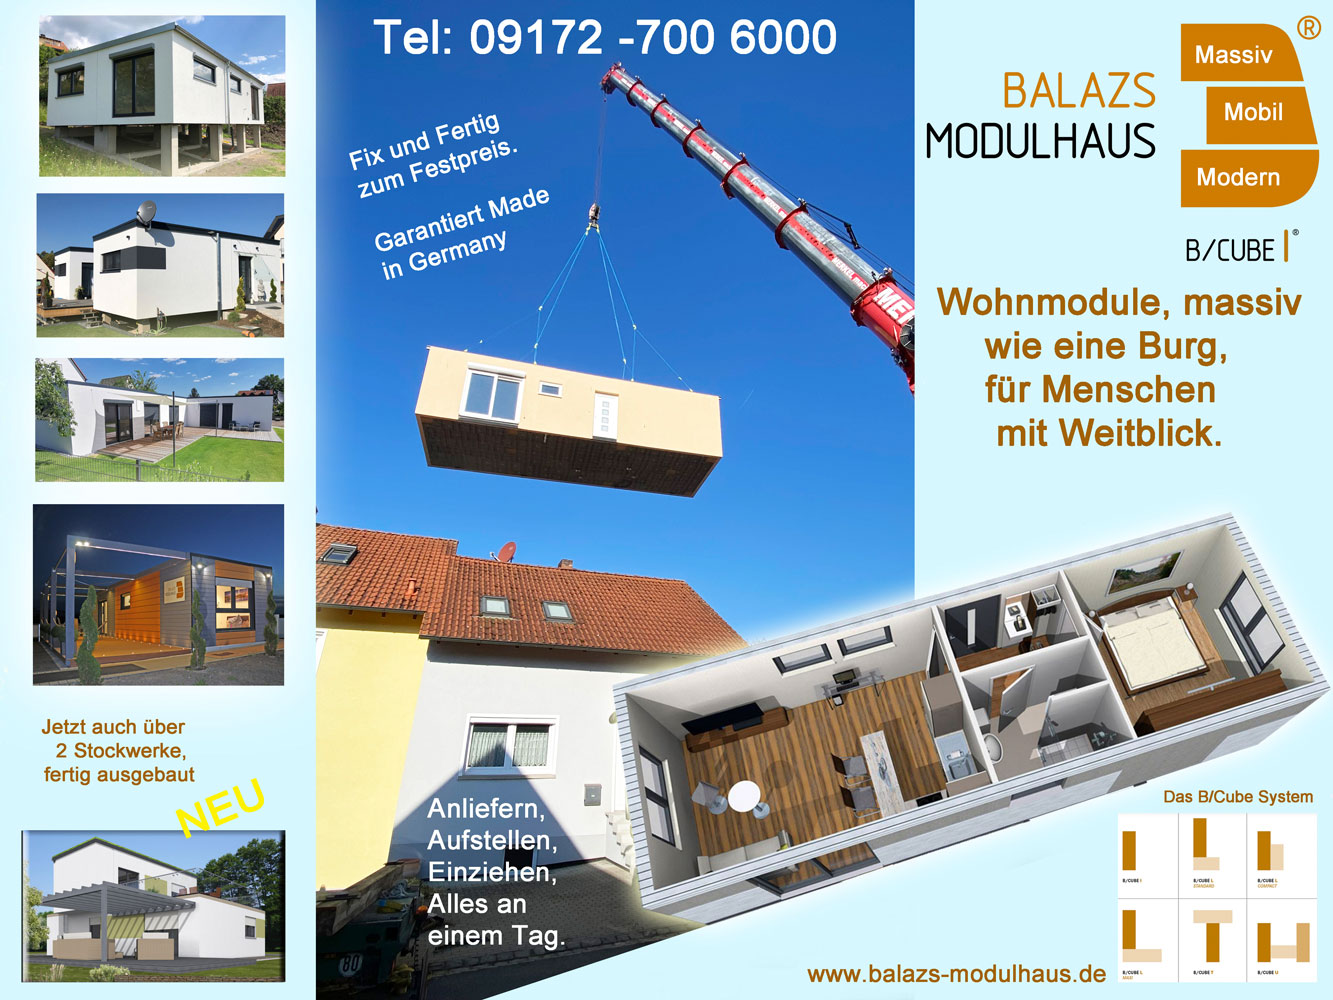 Balazs-Komforthaus GmbH